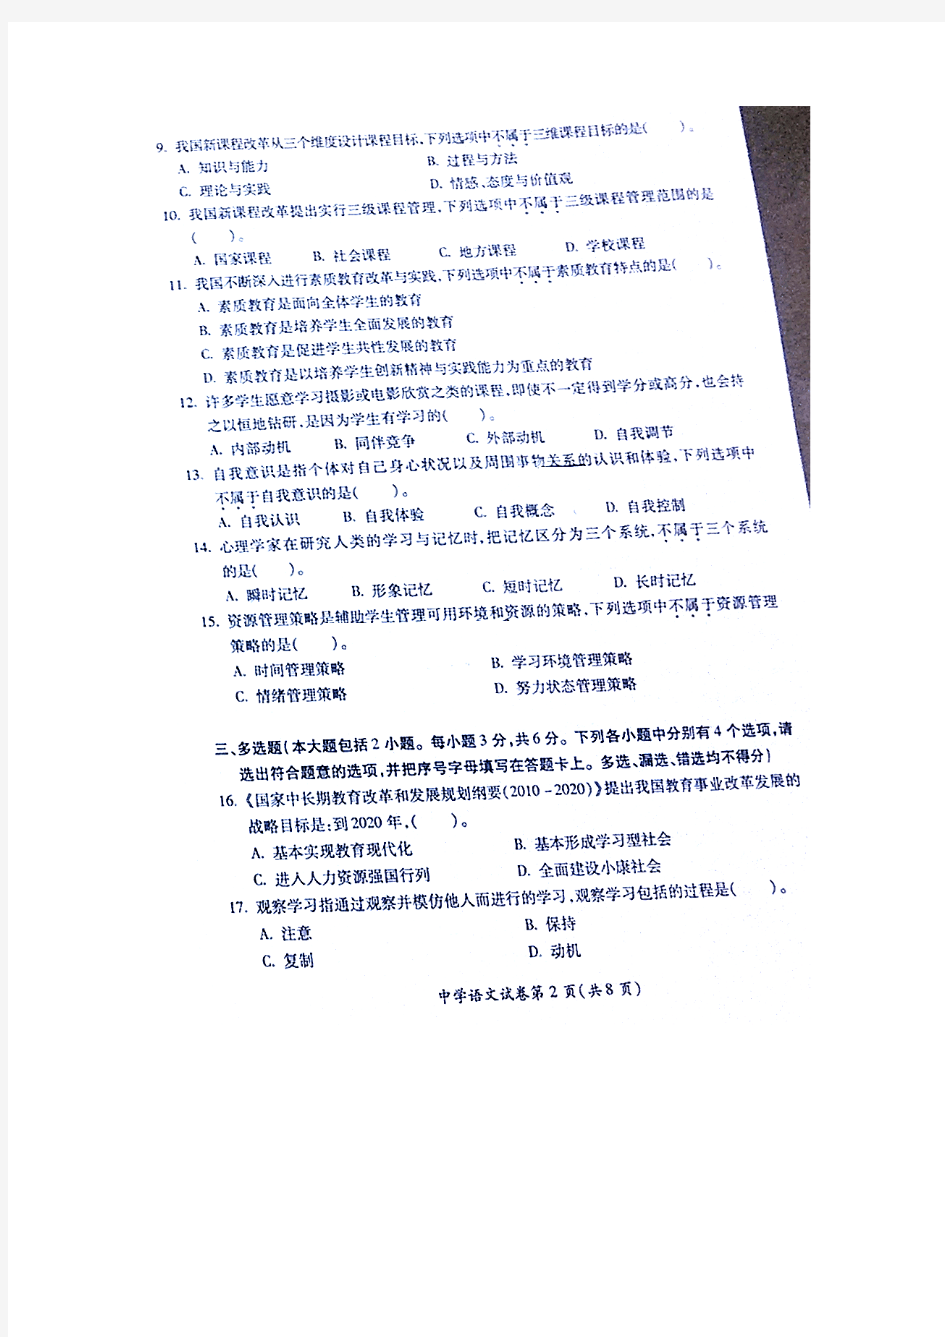 武汉市2013年中小学幼儿园教师职称晋升水平能力考试中学语文试卷2013.9.28(图片版)